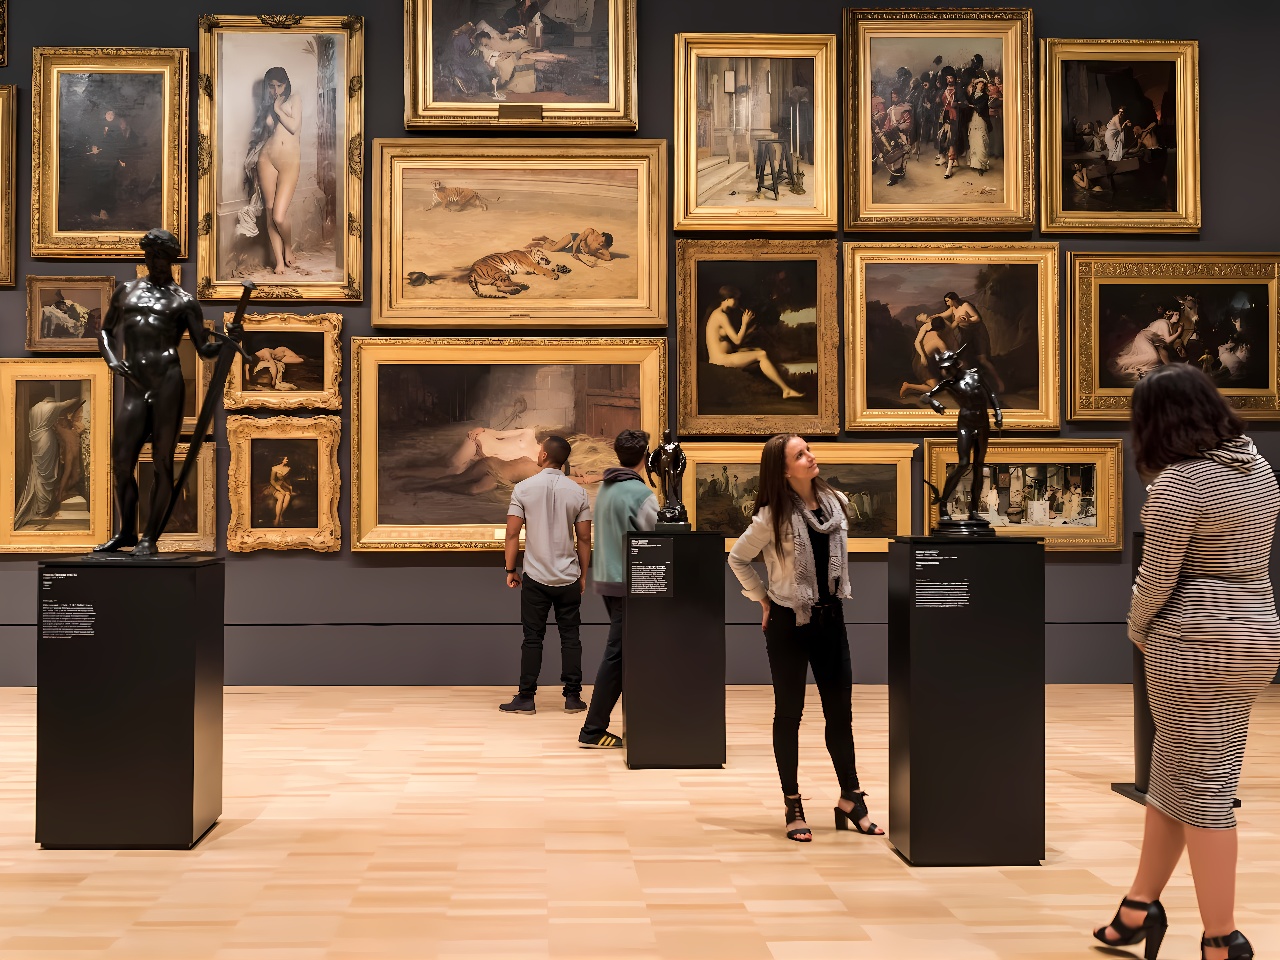 图片展示了几位参观者在艺术画廊内欣赏悬挂在墙上的多幅画作和展示台上的雕塑作品。